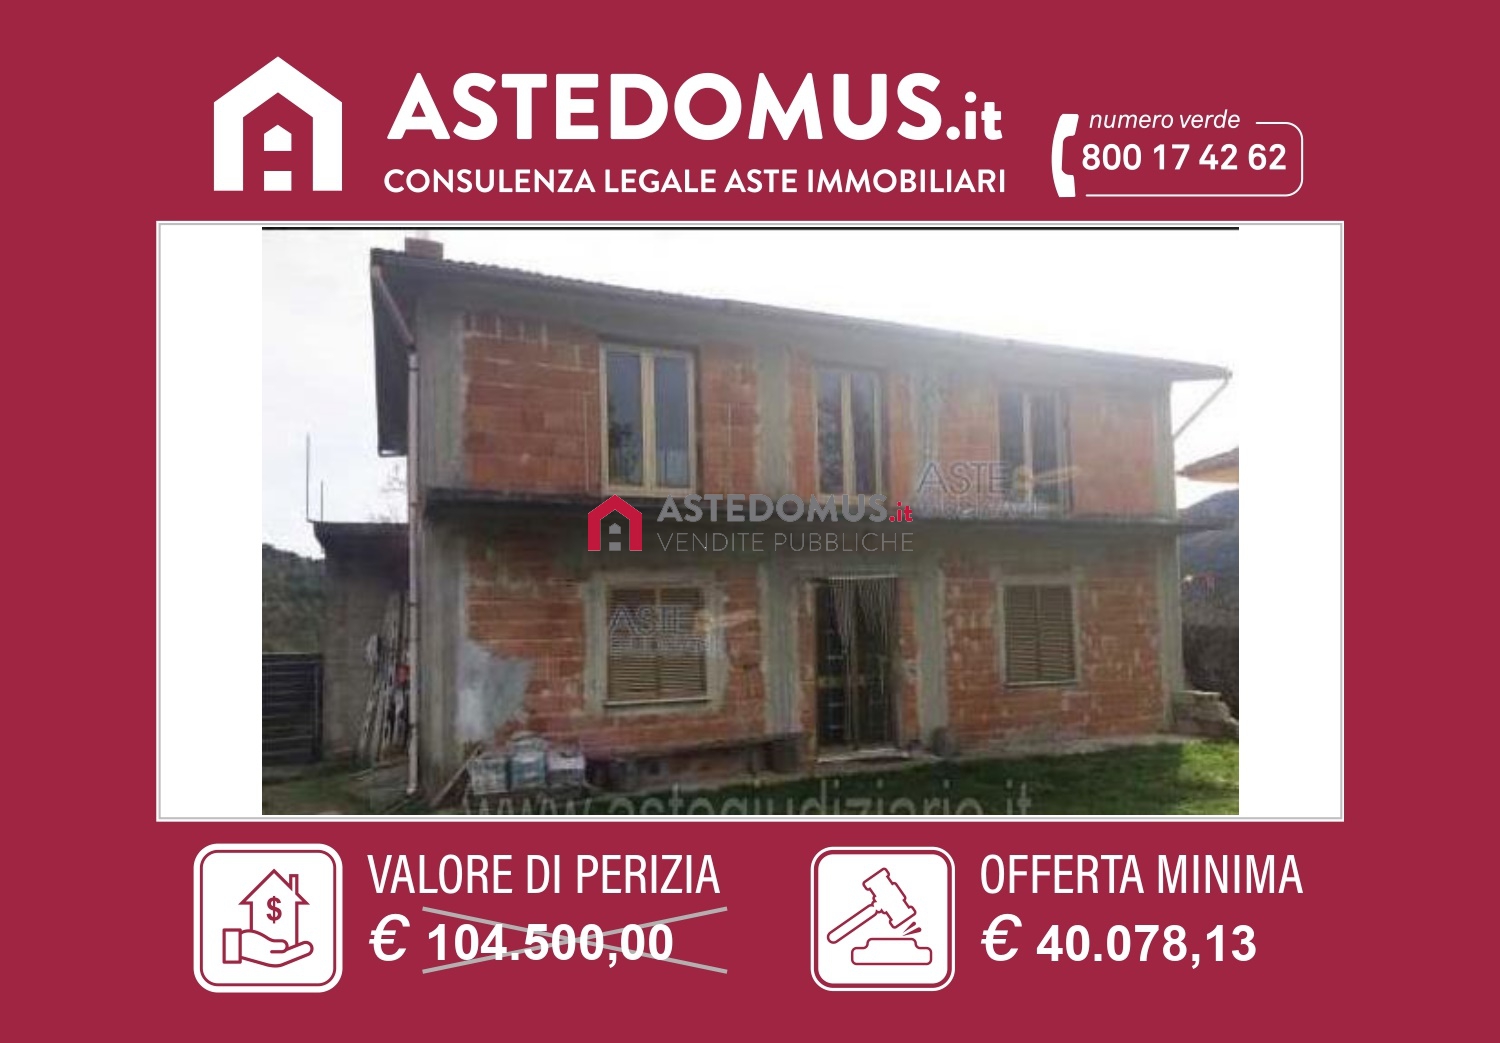 Appartamento classe A1 a Caselle in Pittari